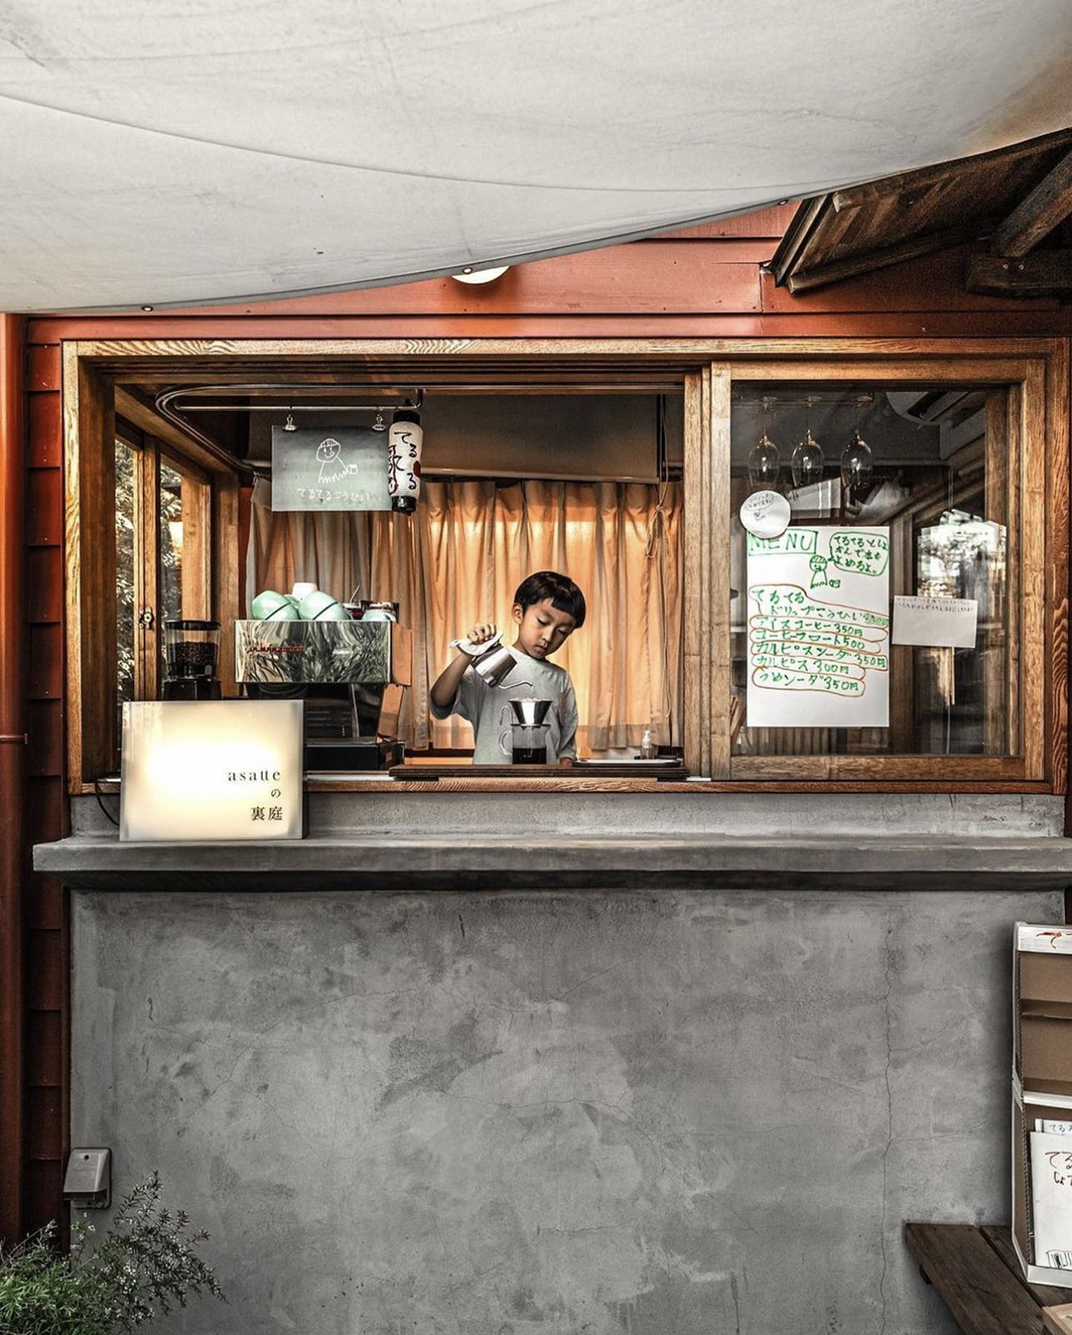 社区店复古咖啡馆 日本 上海 北京 广州 武汉 咖啡店 餐饮商业 logo设计 vi设计 空间设计